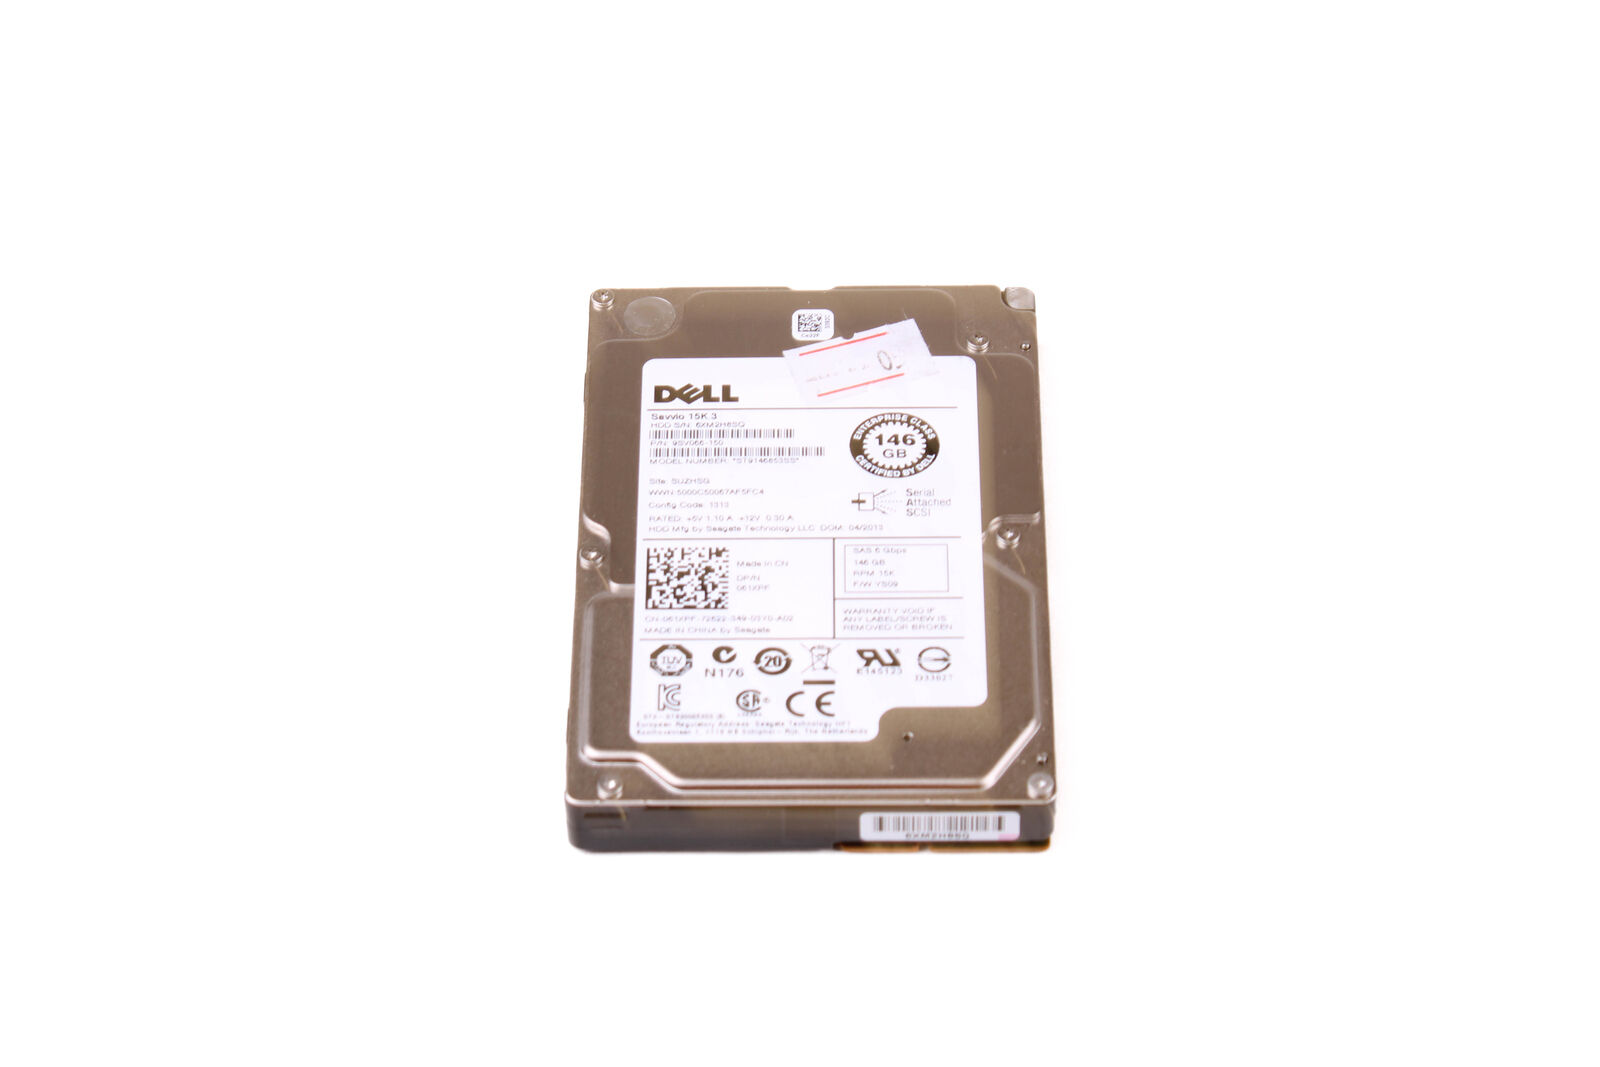 Dell 61XPF 146GB 15000RPM 6Gb/s 64MB 2.5 SAS Hard Drive ST9146853SS